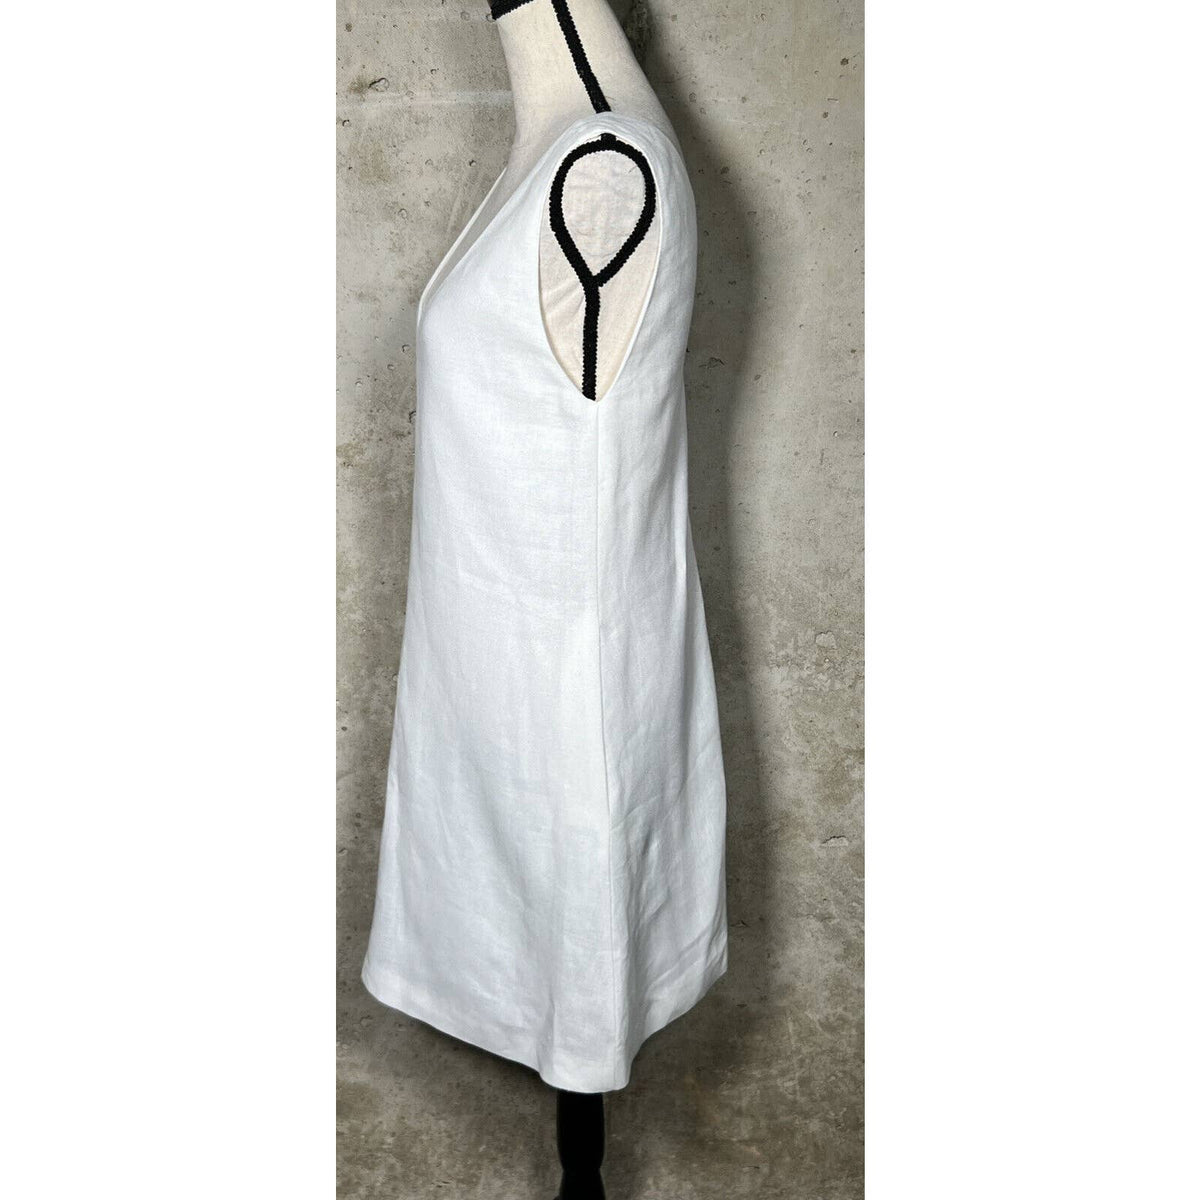 Theory V-Neck 100% Linen Sleeveless Dress Sz. Small NEW